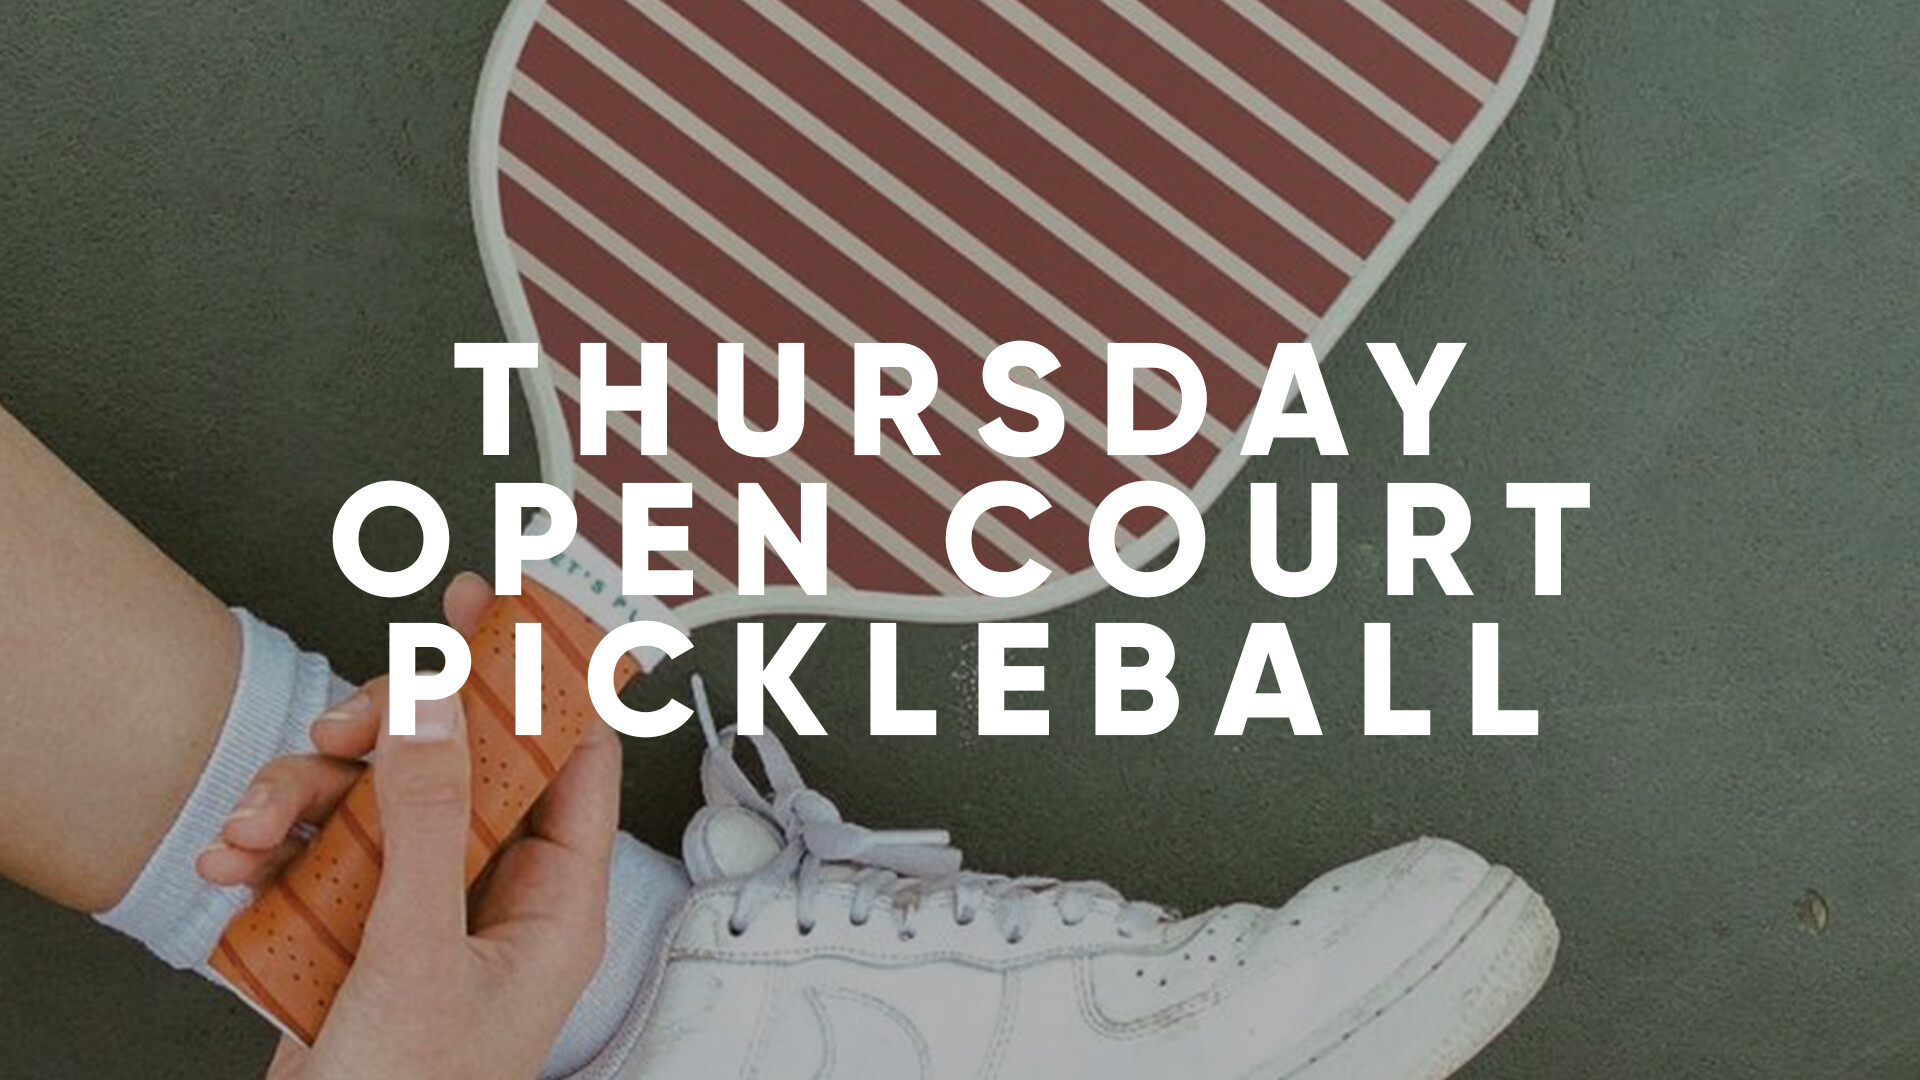 Thursday Open Court Pickleball